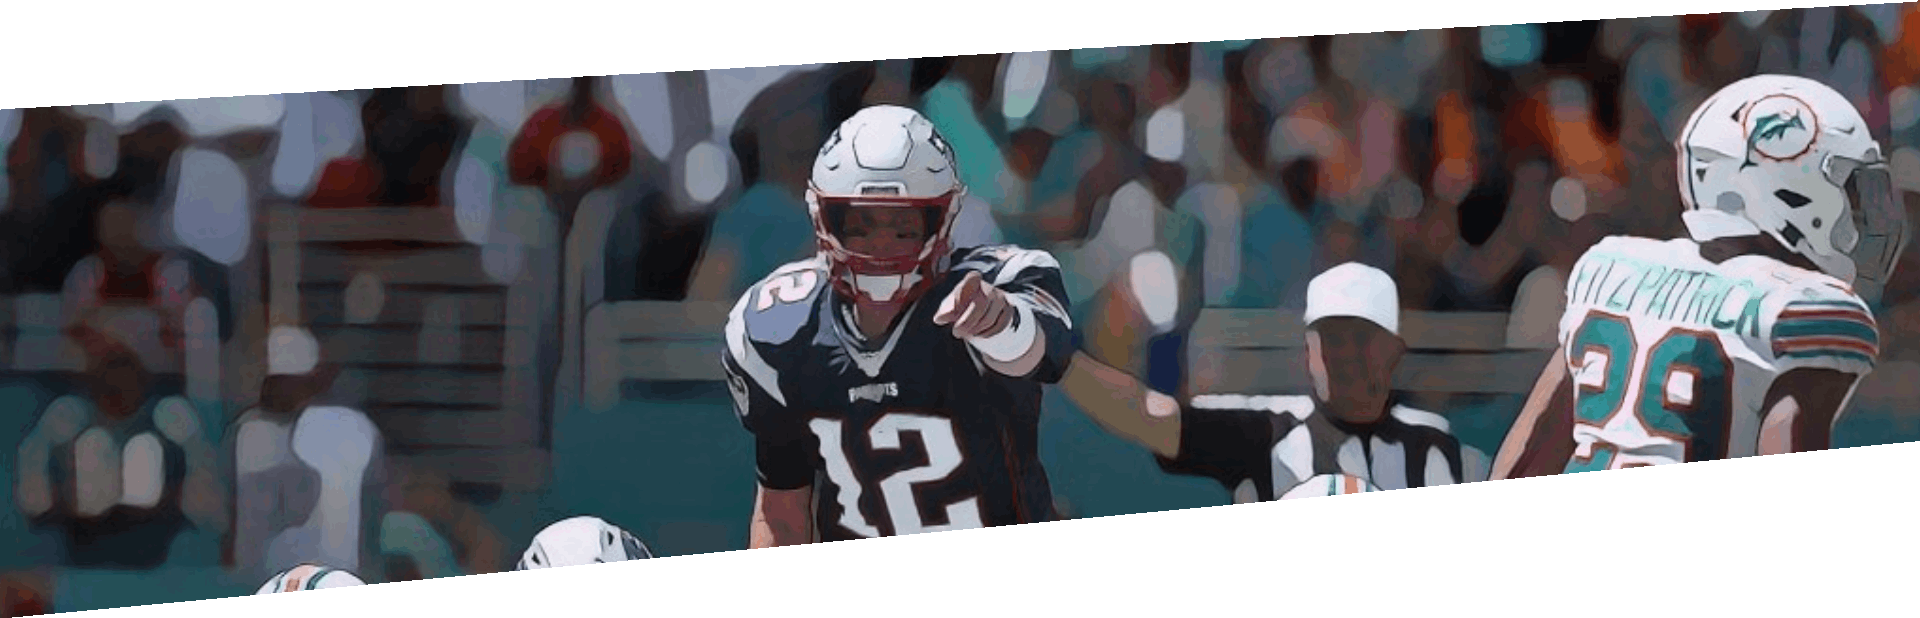 Brady pointing